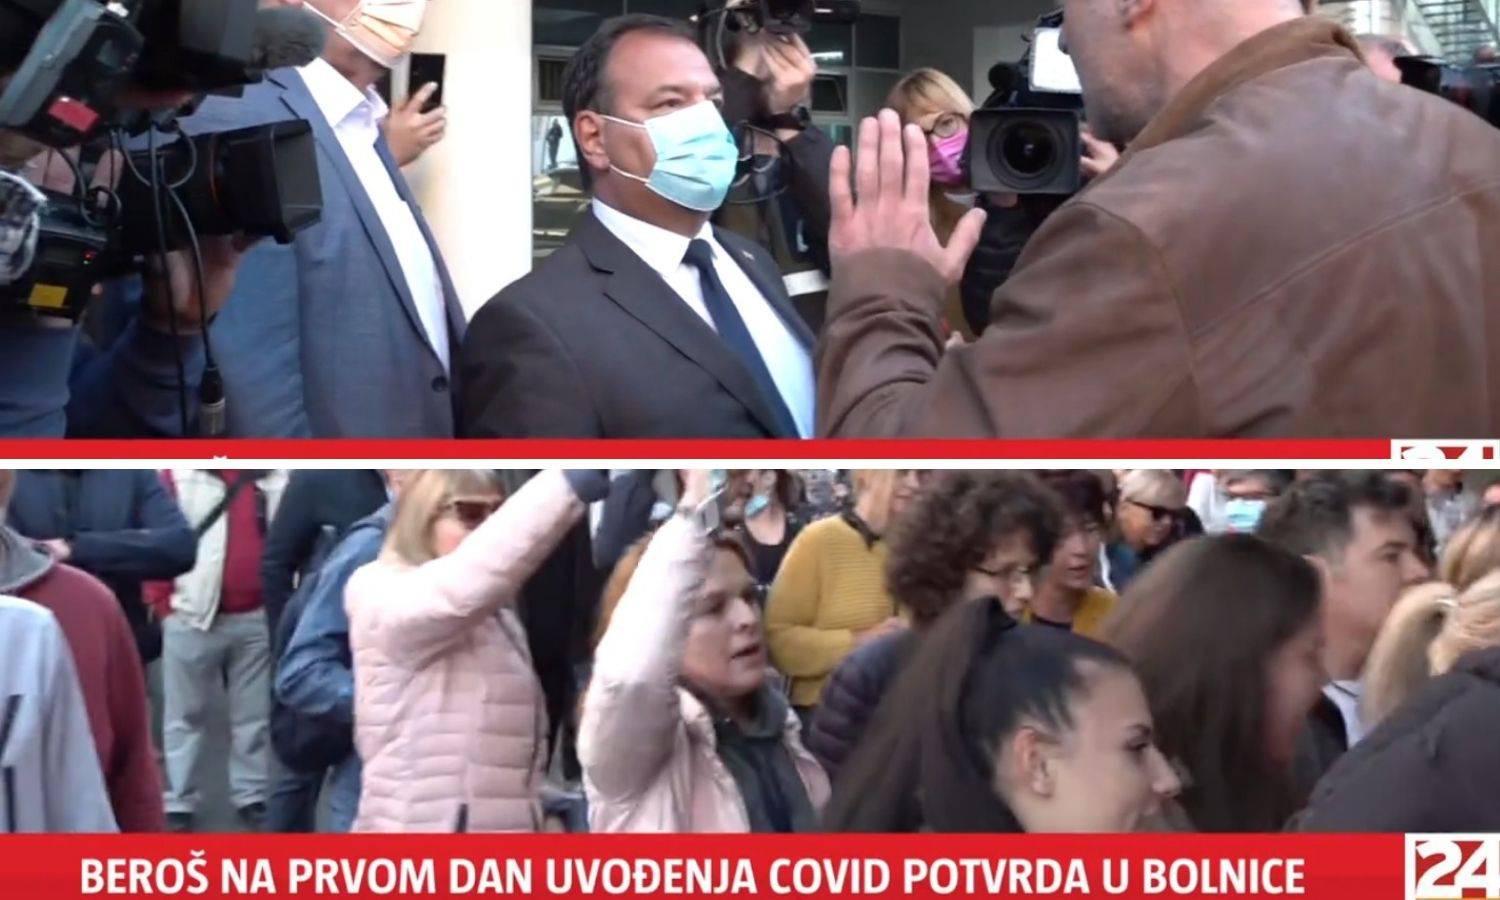 VIDEO Na Rebru upali u bolnicu, pozvana i policija. Na prosvjedu bio i svećenik, vikali su 'izdaja'